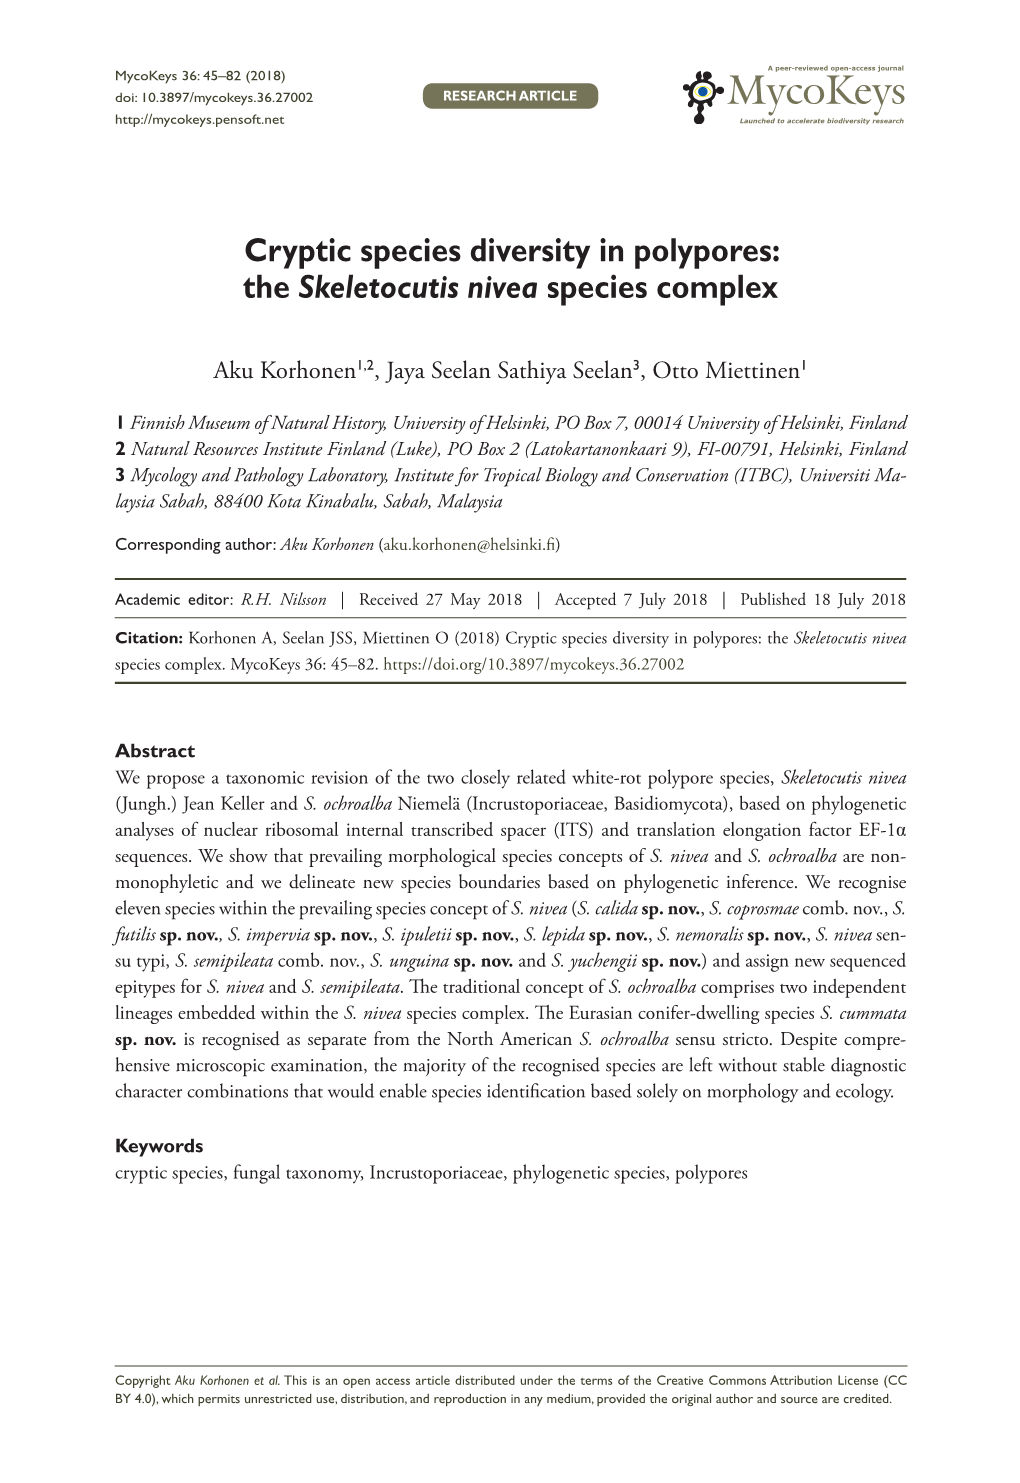 Cryptic Species Diversity in Polypores: the Skeletocutis Nivea Species Complex